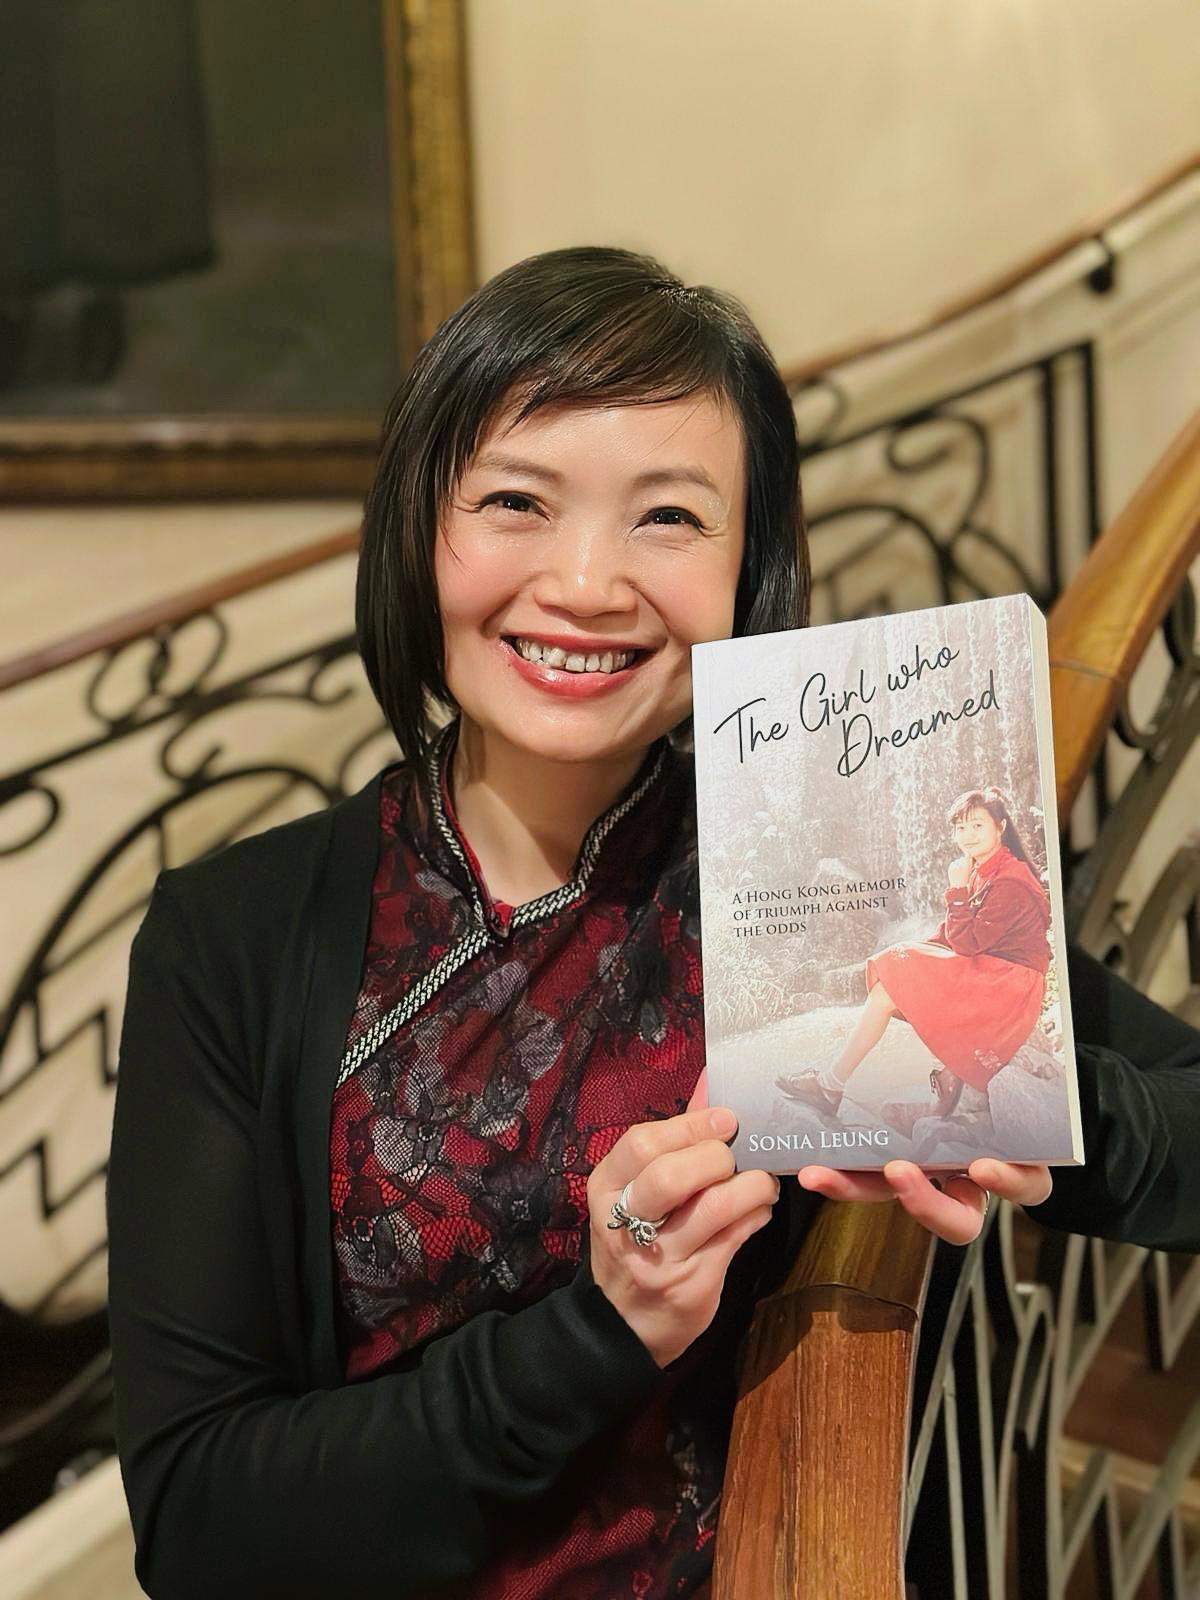 Livraria portuguesa | Sonia Leung em Macau para falar da sua obra